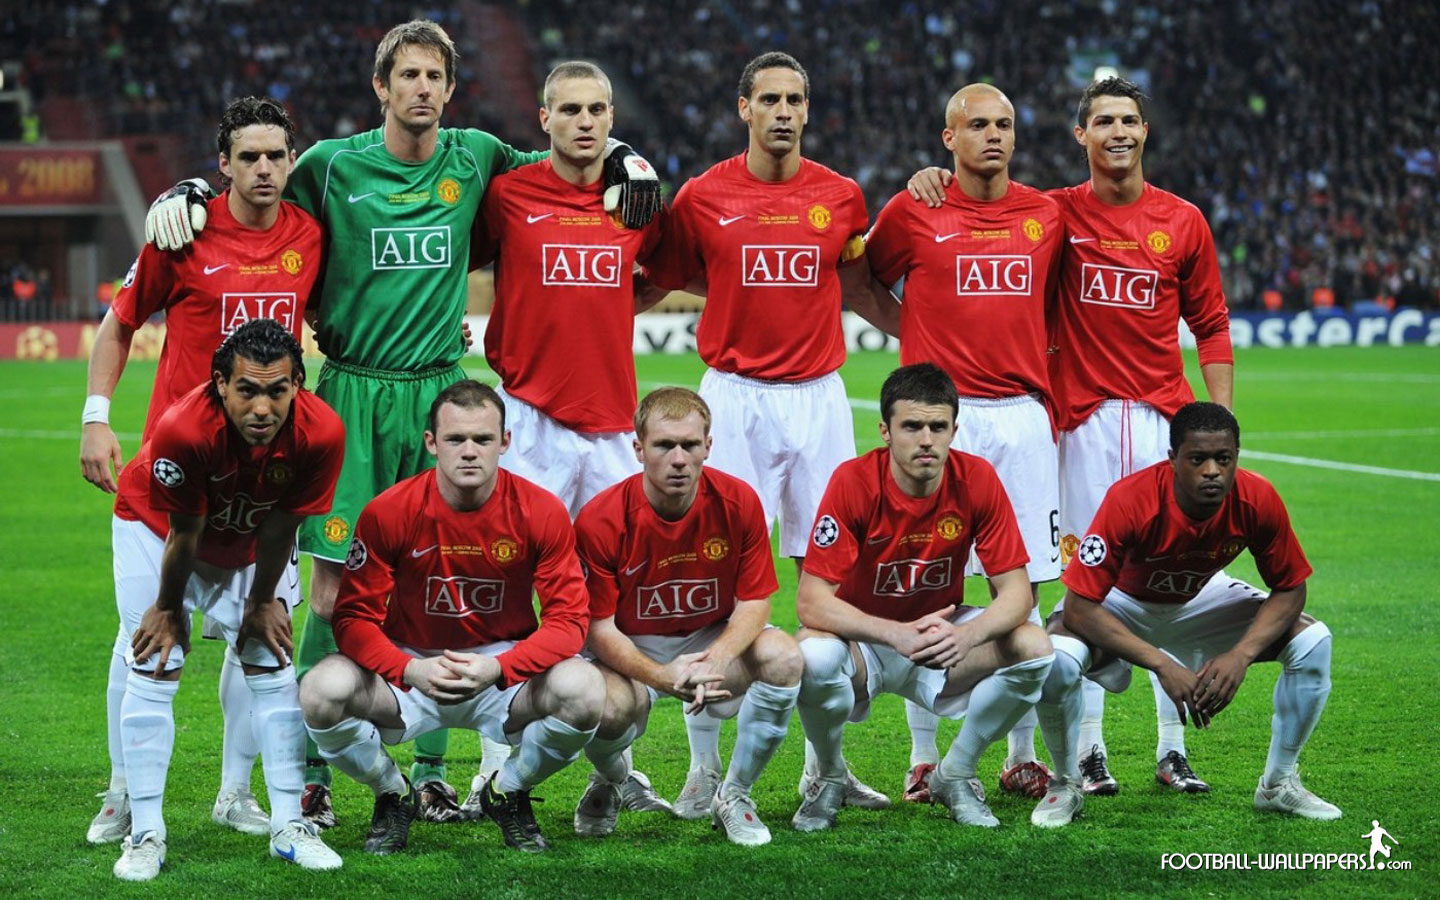 Esquadrão Imortal – Manchester United 2006-2010 - Imortais do Futebol